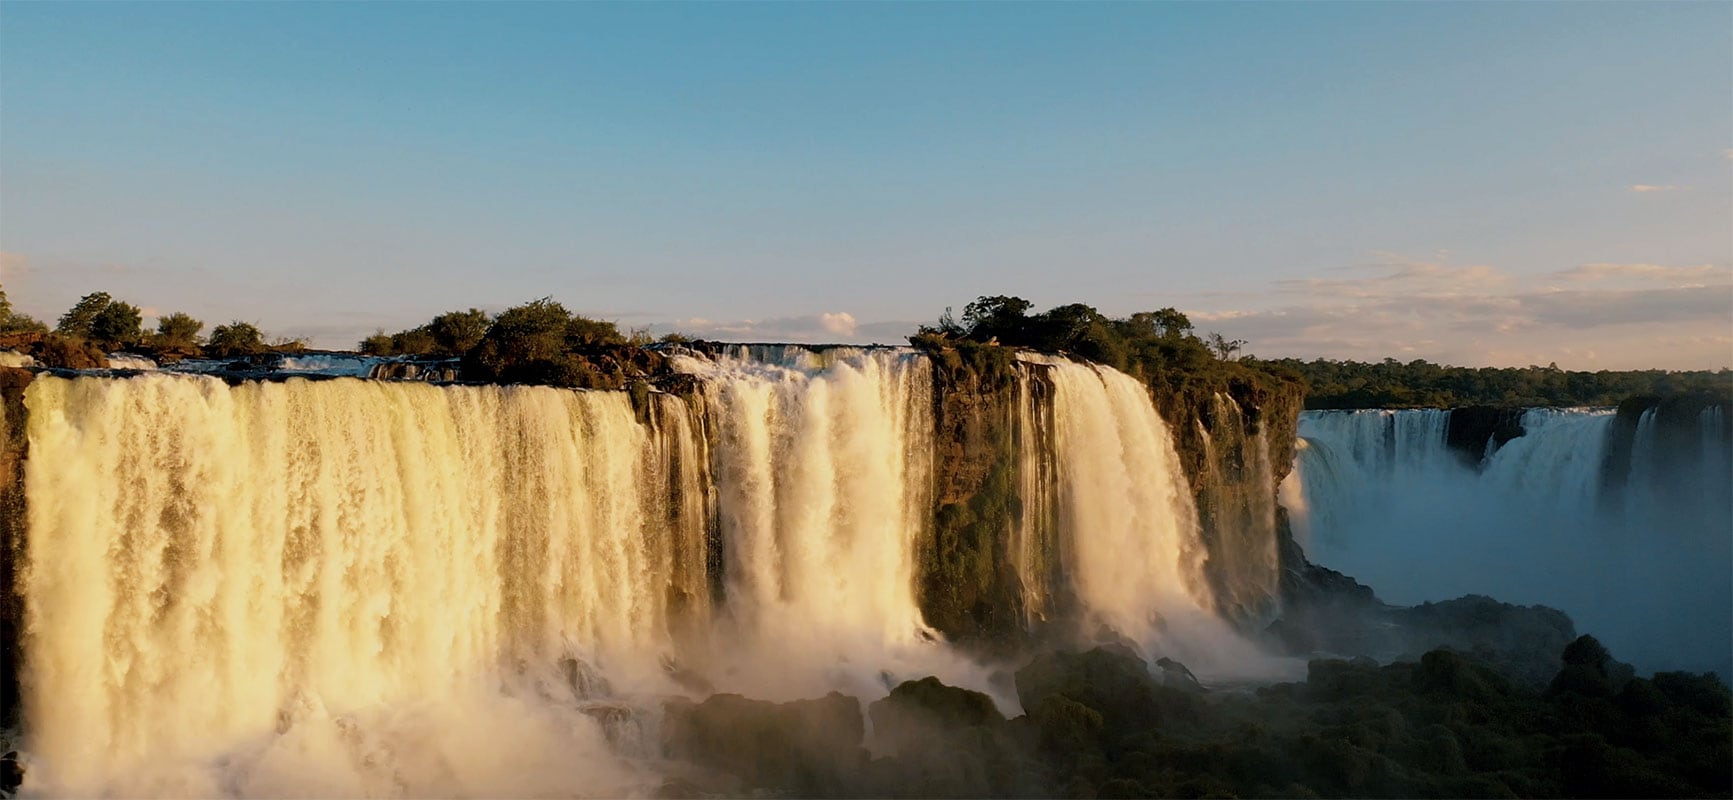 Cataratas do Iguaçu - Foz do Iguaçu - Paraná, Brasil